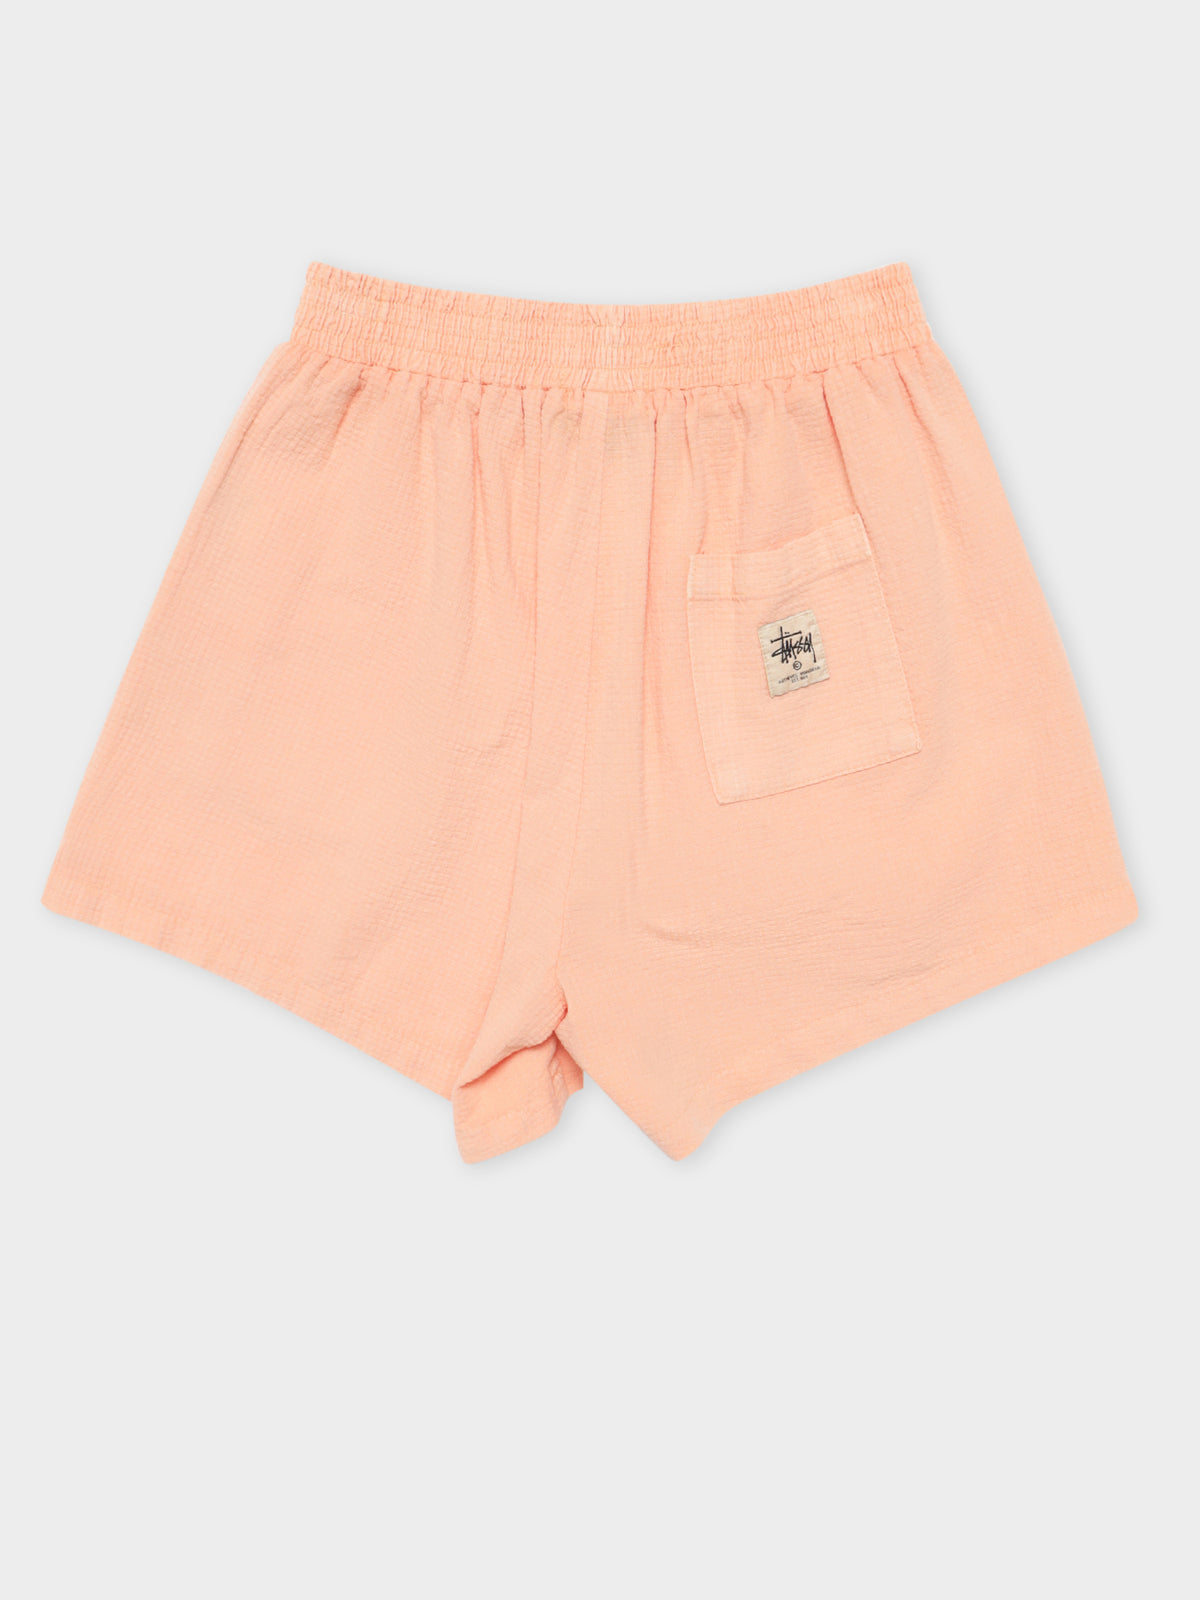 Vermont HW Shorts in Peach